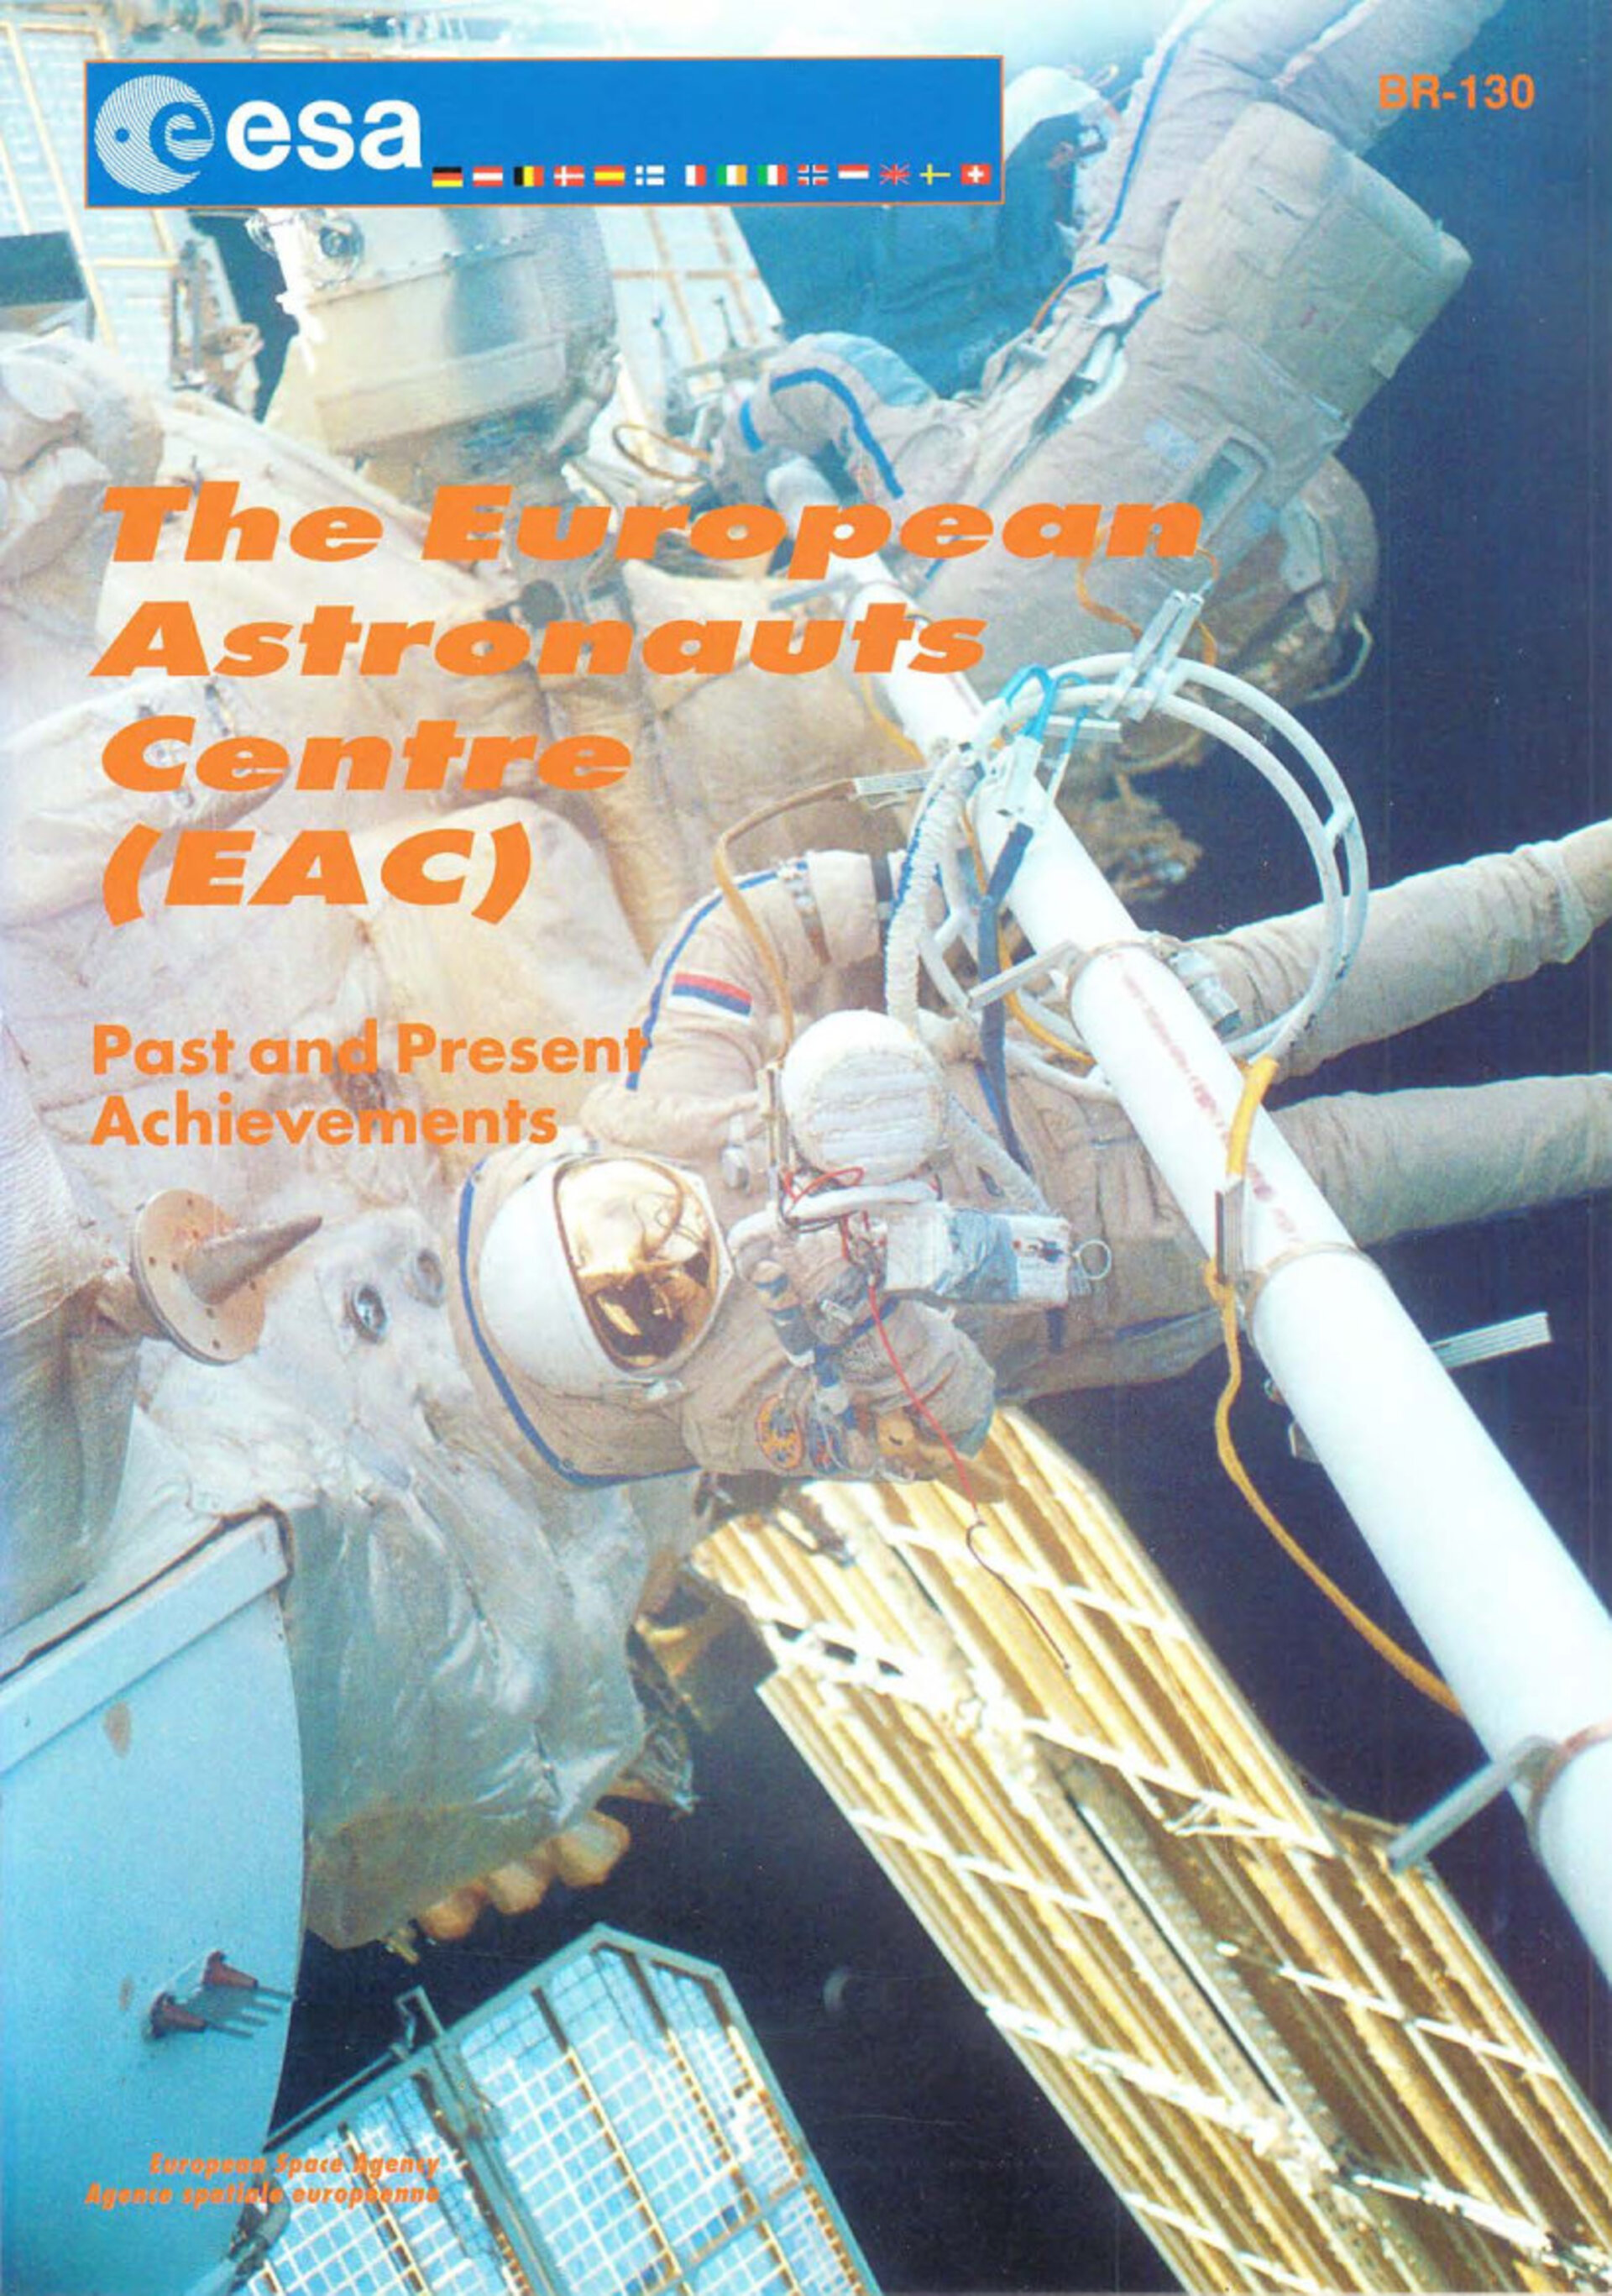 ESA BR-130 The European Astronaut Centre (EAC) – Past and Present Achievements